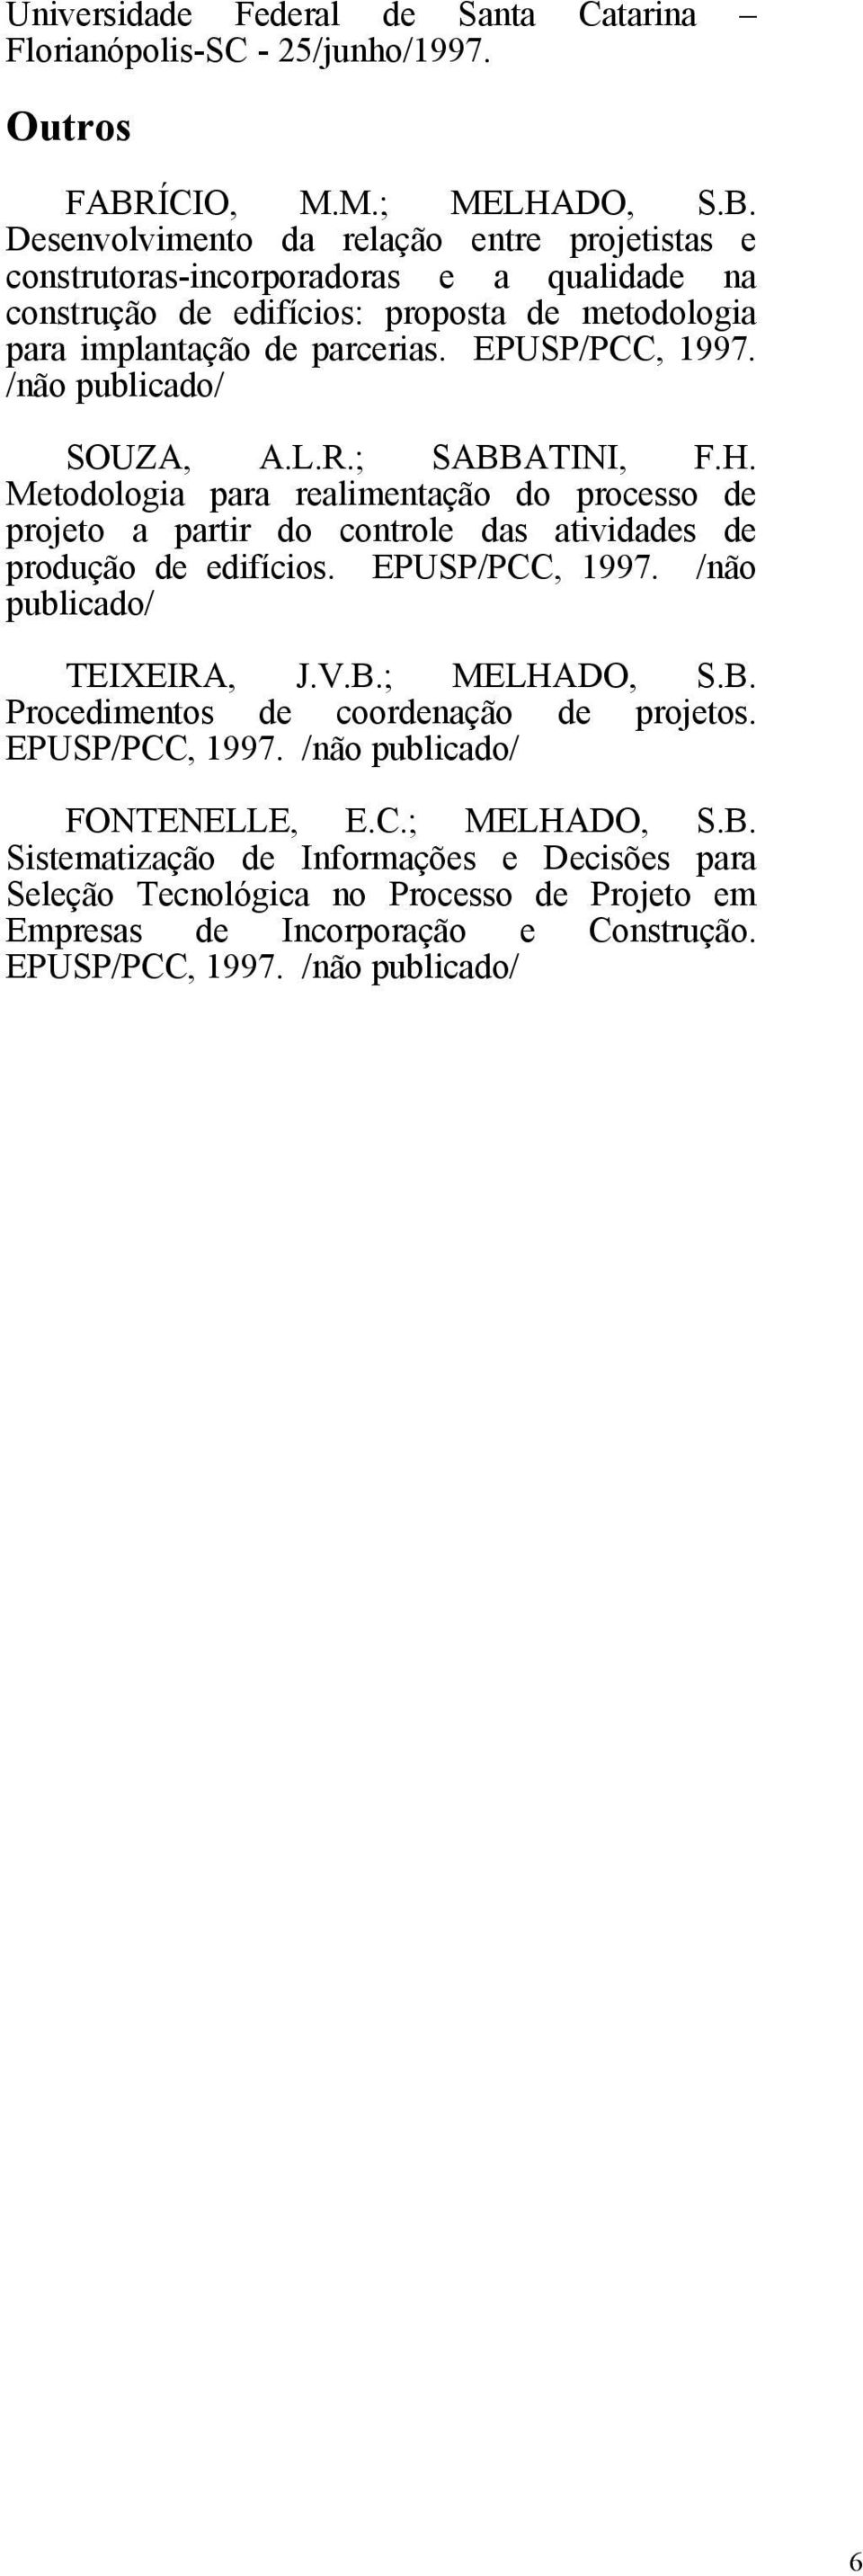 EPUSP/PCC, 1997. /não publicado/ SOUZA, A.L.R.; SABBATINI, F.H. Metodologia para realimentação do processo de projeto a partir do controle das atividades de produção de edifícios. EPUSP/PCC, 1997.